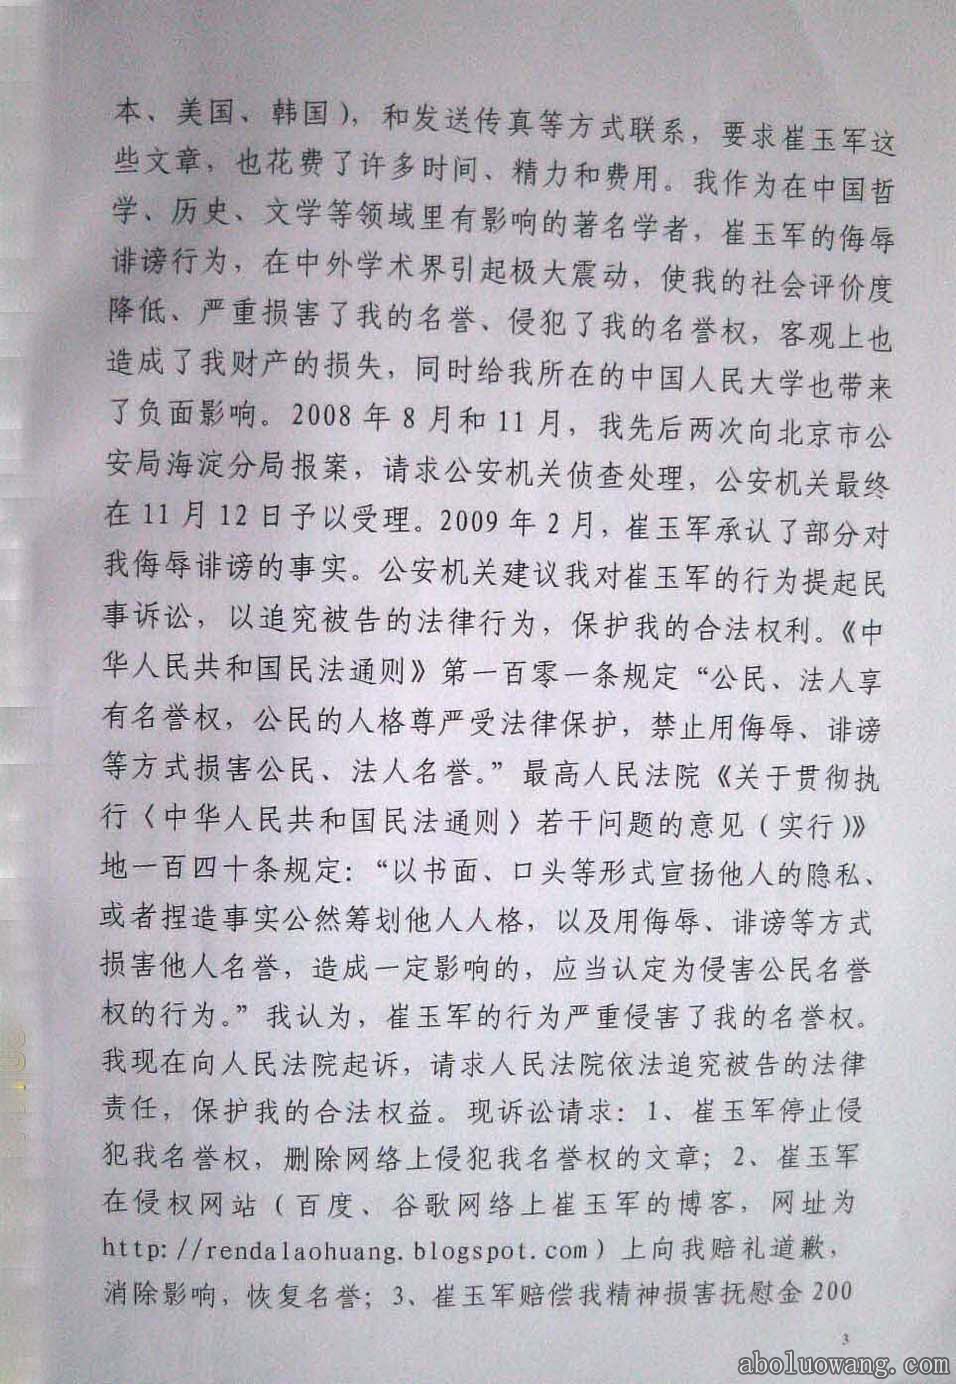 方克立弟子崔玉军诽谤刘正教授法庭初审判决书3